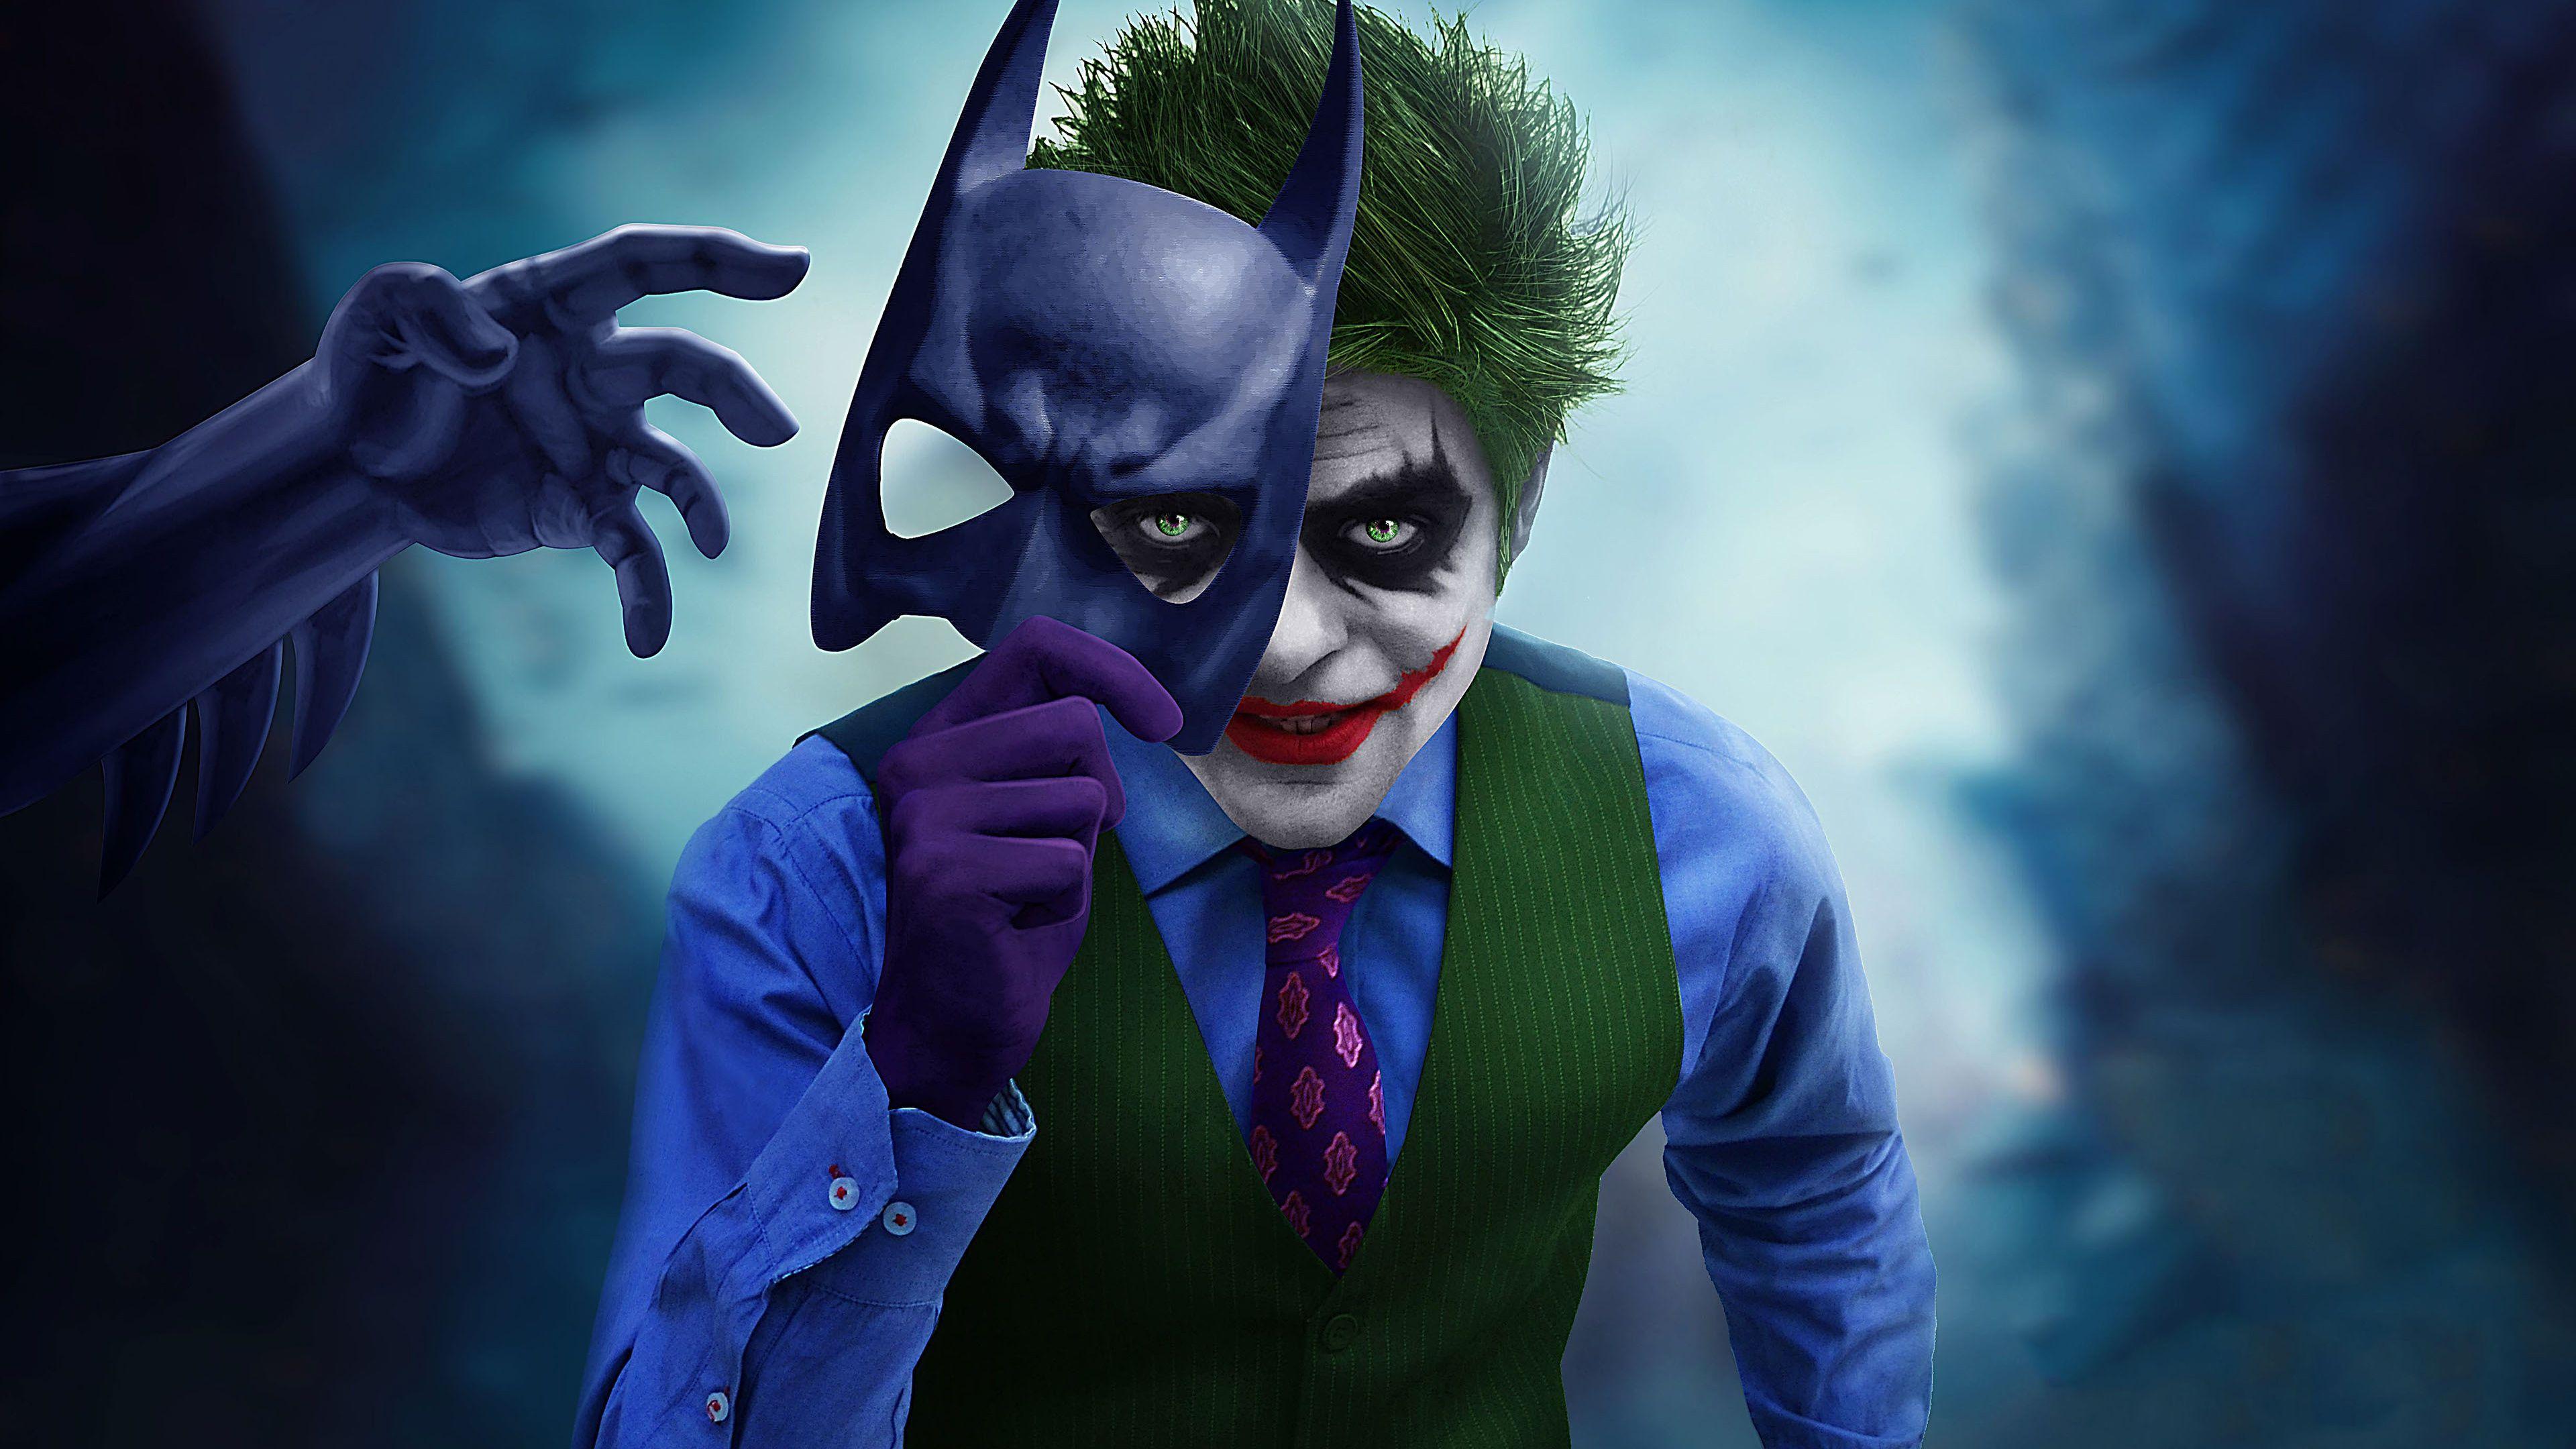  Joker  Killing Joke 4K  Ultra HD Wallpapers  Top Free Joker  